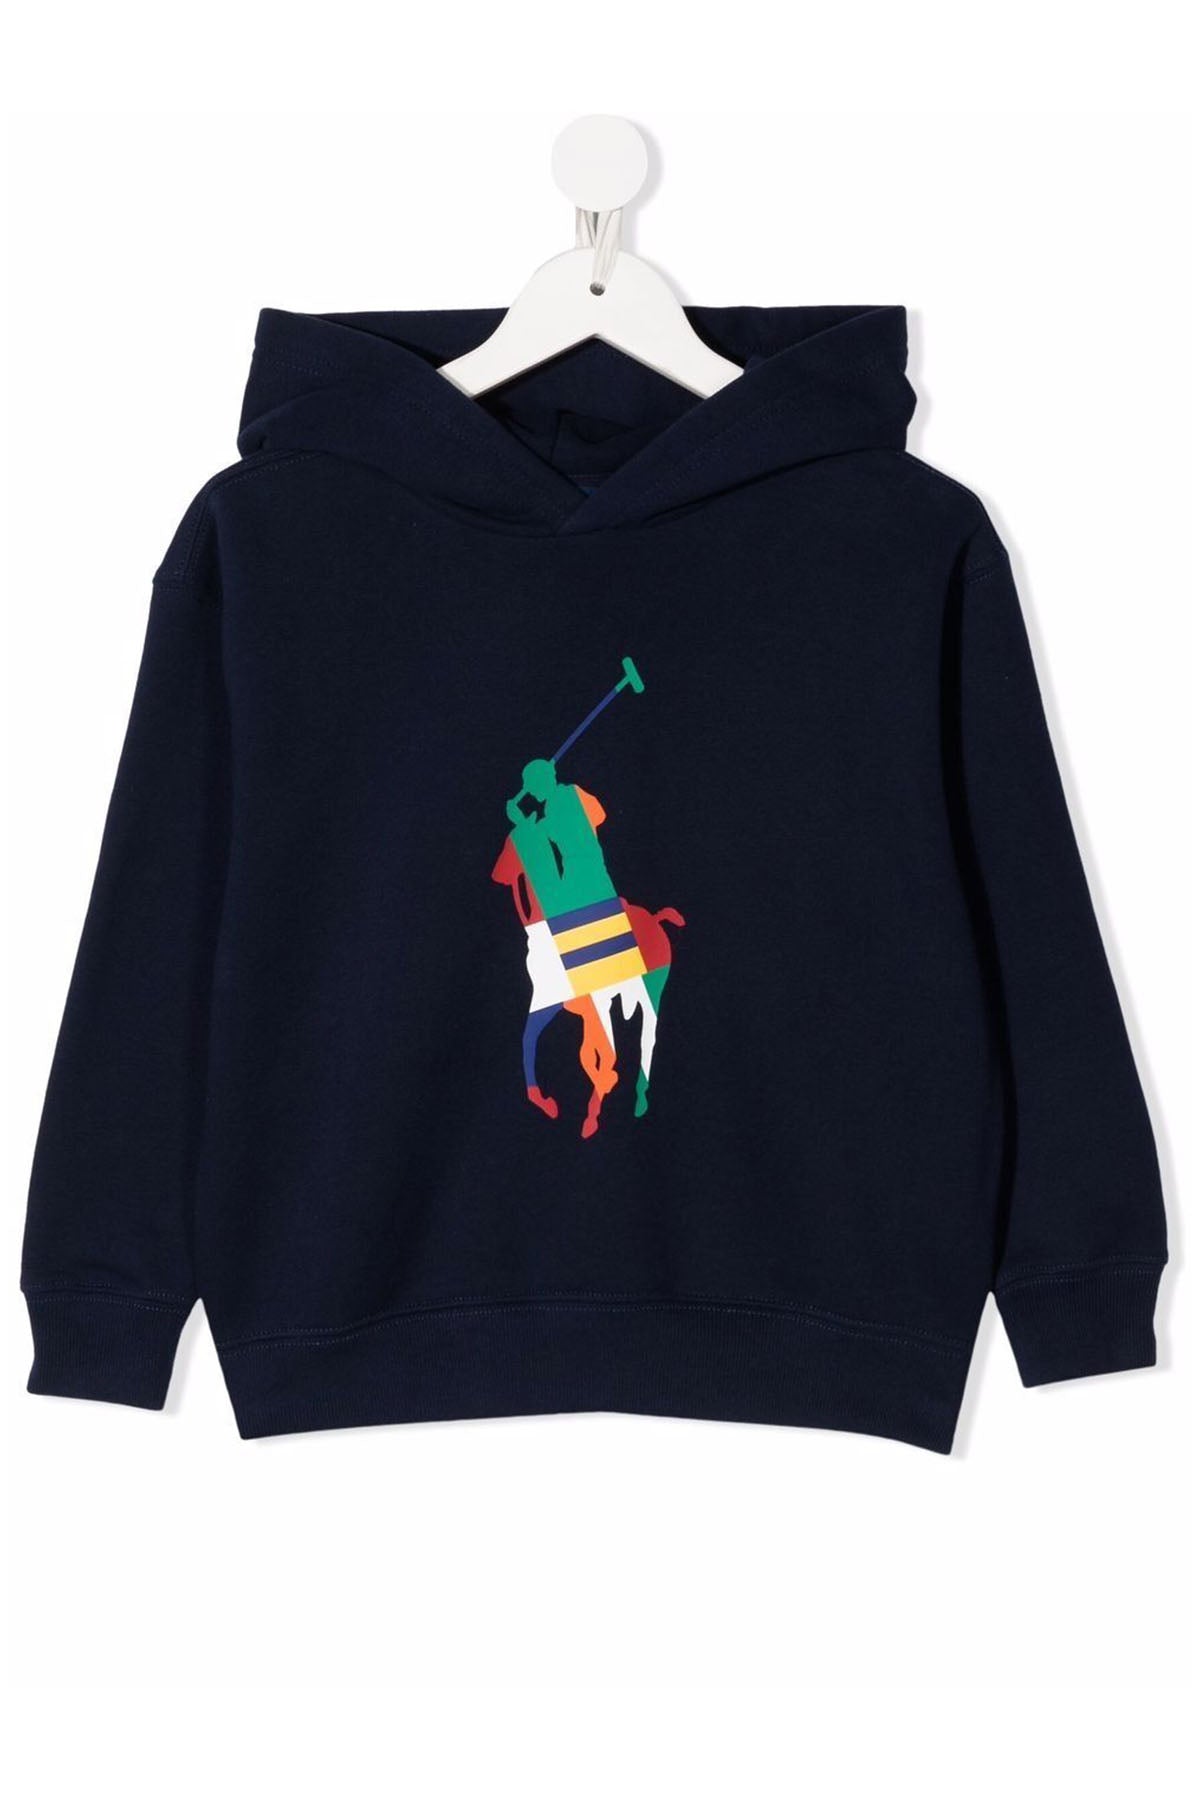 Polo Ralph Lauren Kids S-M Beden Kız Çocuk Kapüşonlu Sweatshirt